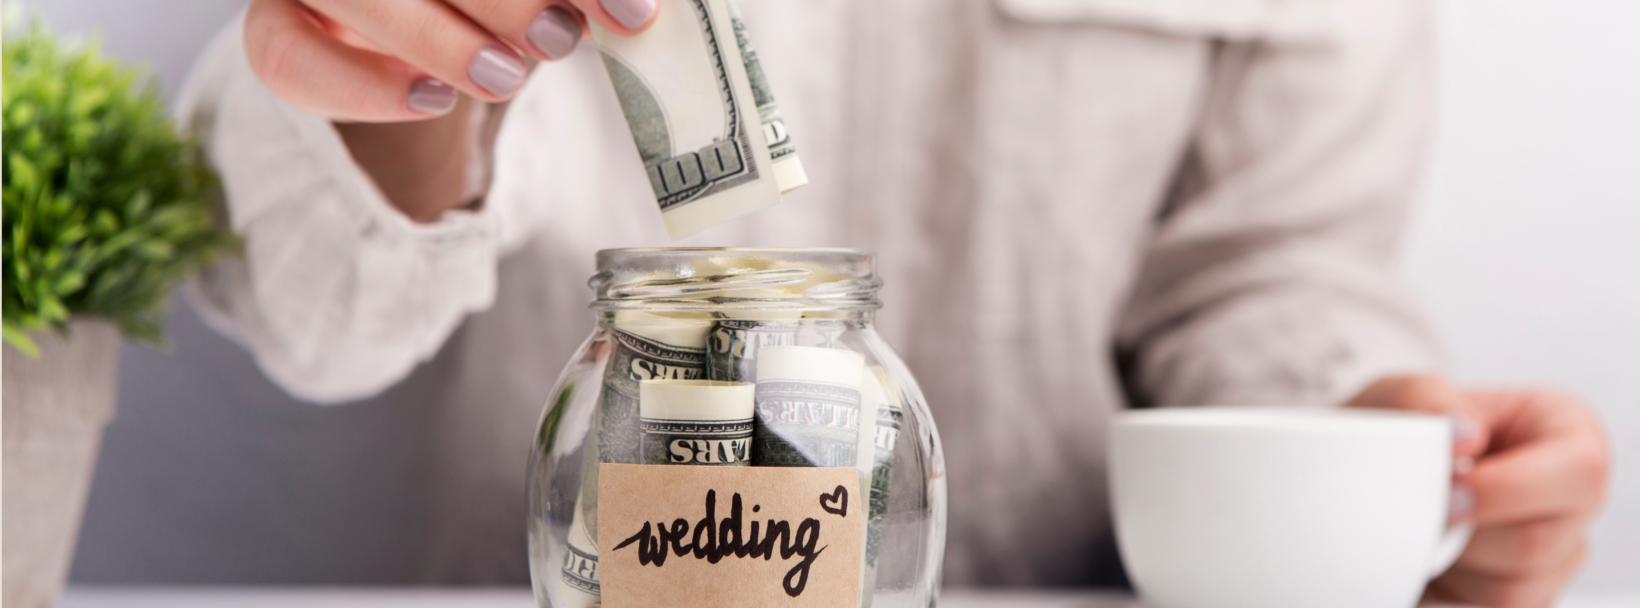 koszty wesela i ślubu w skarbonce